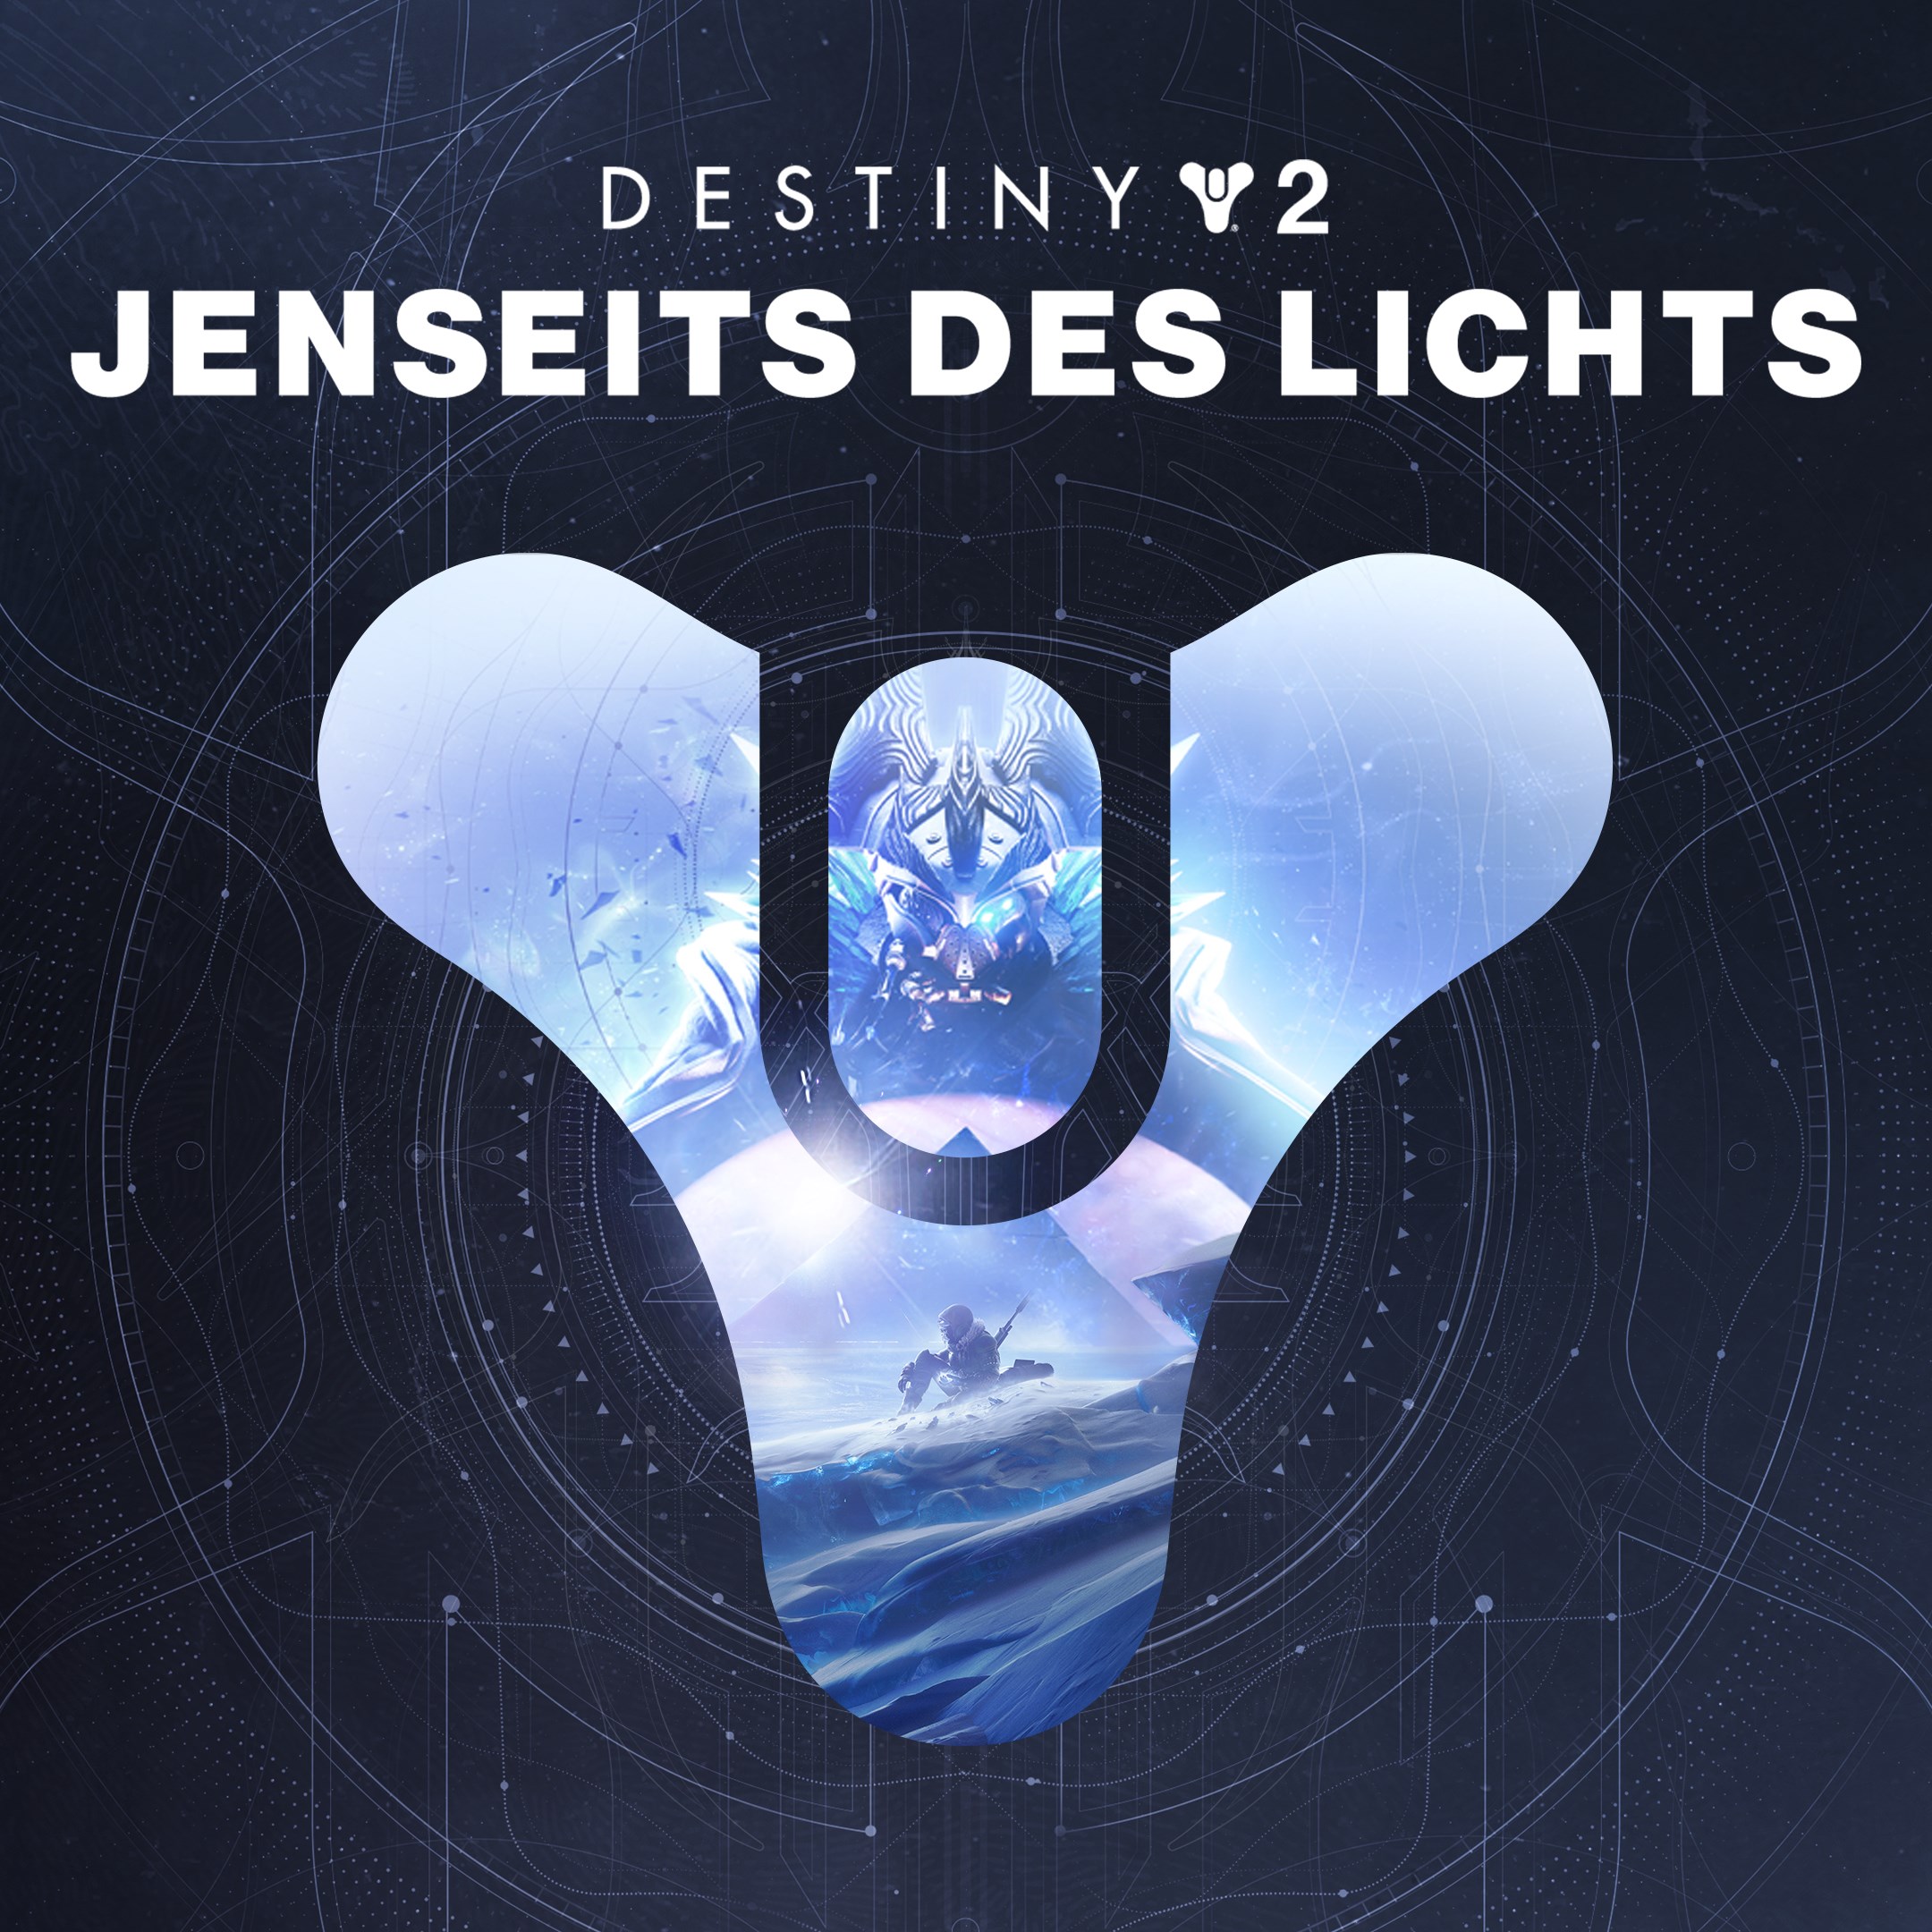 Destiny 2 Jenseits des Lichts PC